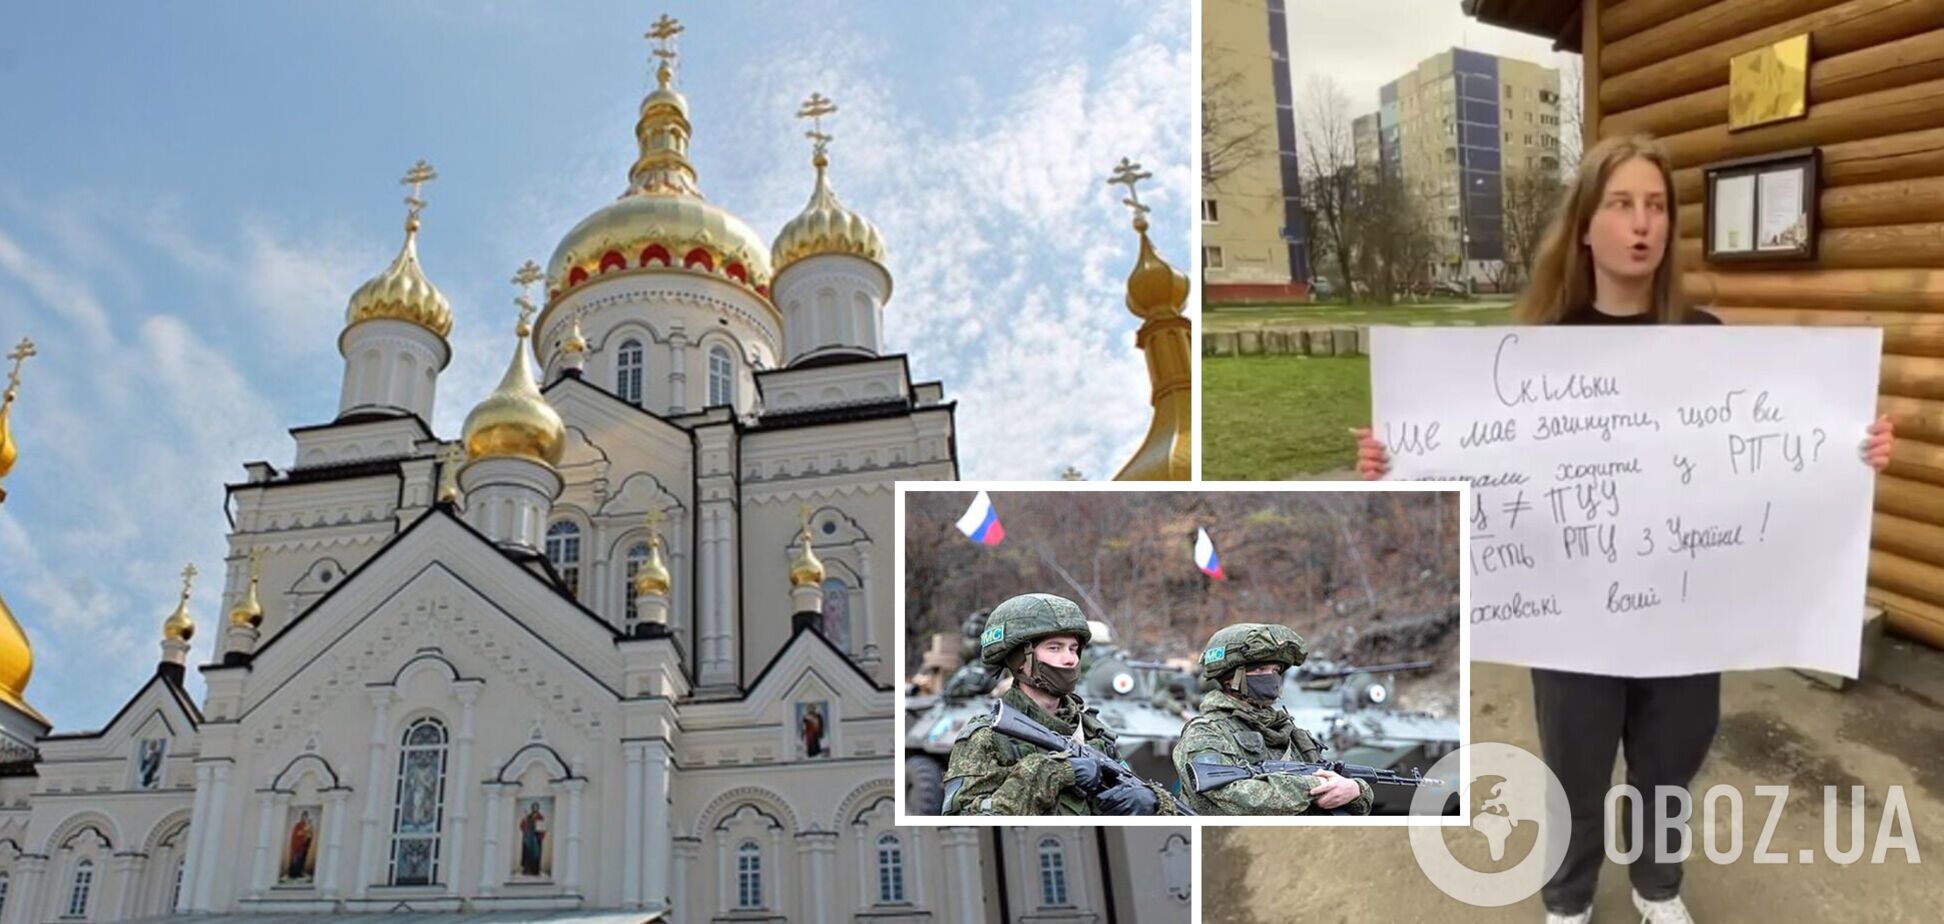 Во Львове верующие УПЦ МП заявили, что войну развязала не Россия, а 'щирые украинцы'. Видео